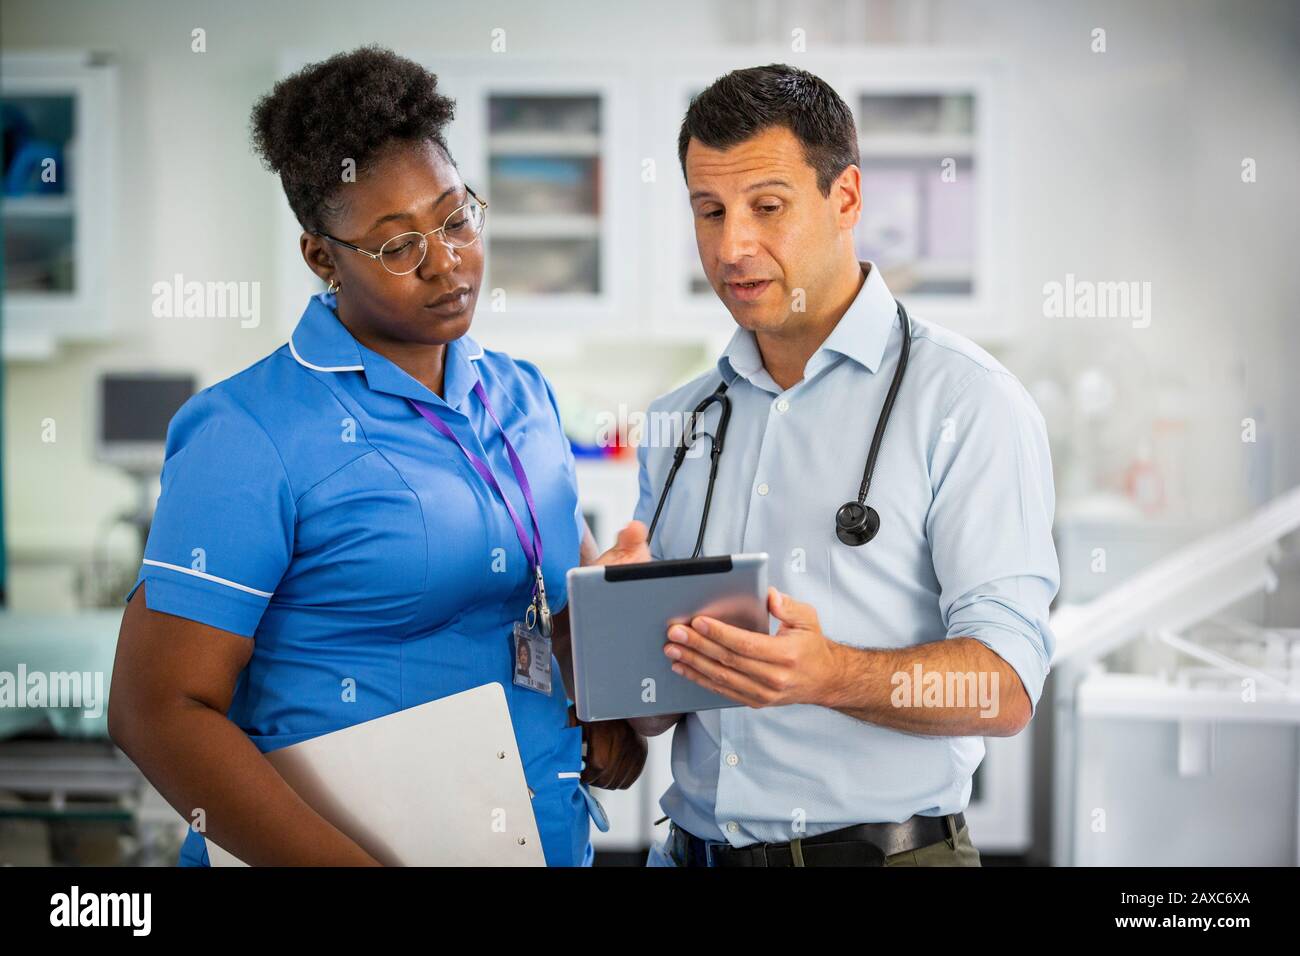 Medico di sesso maschile con compressa digitale che parla con l'infermiere di sesso femminile in ospedale Foto Stock